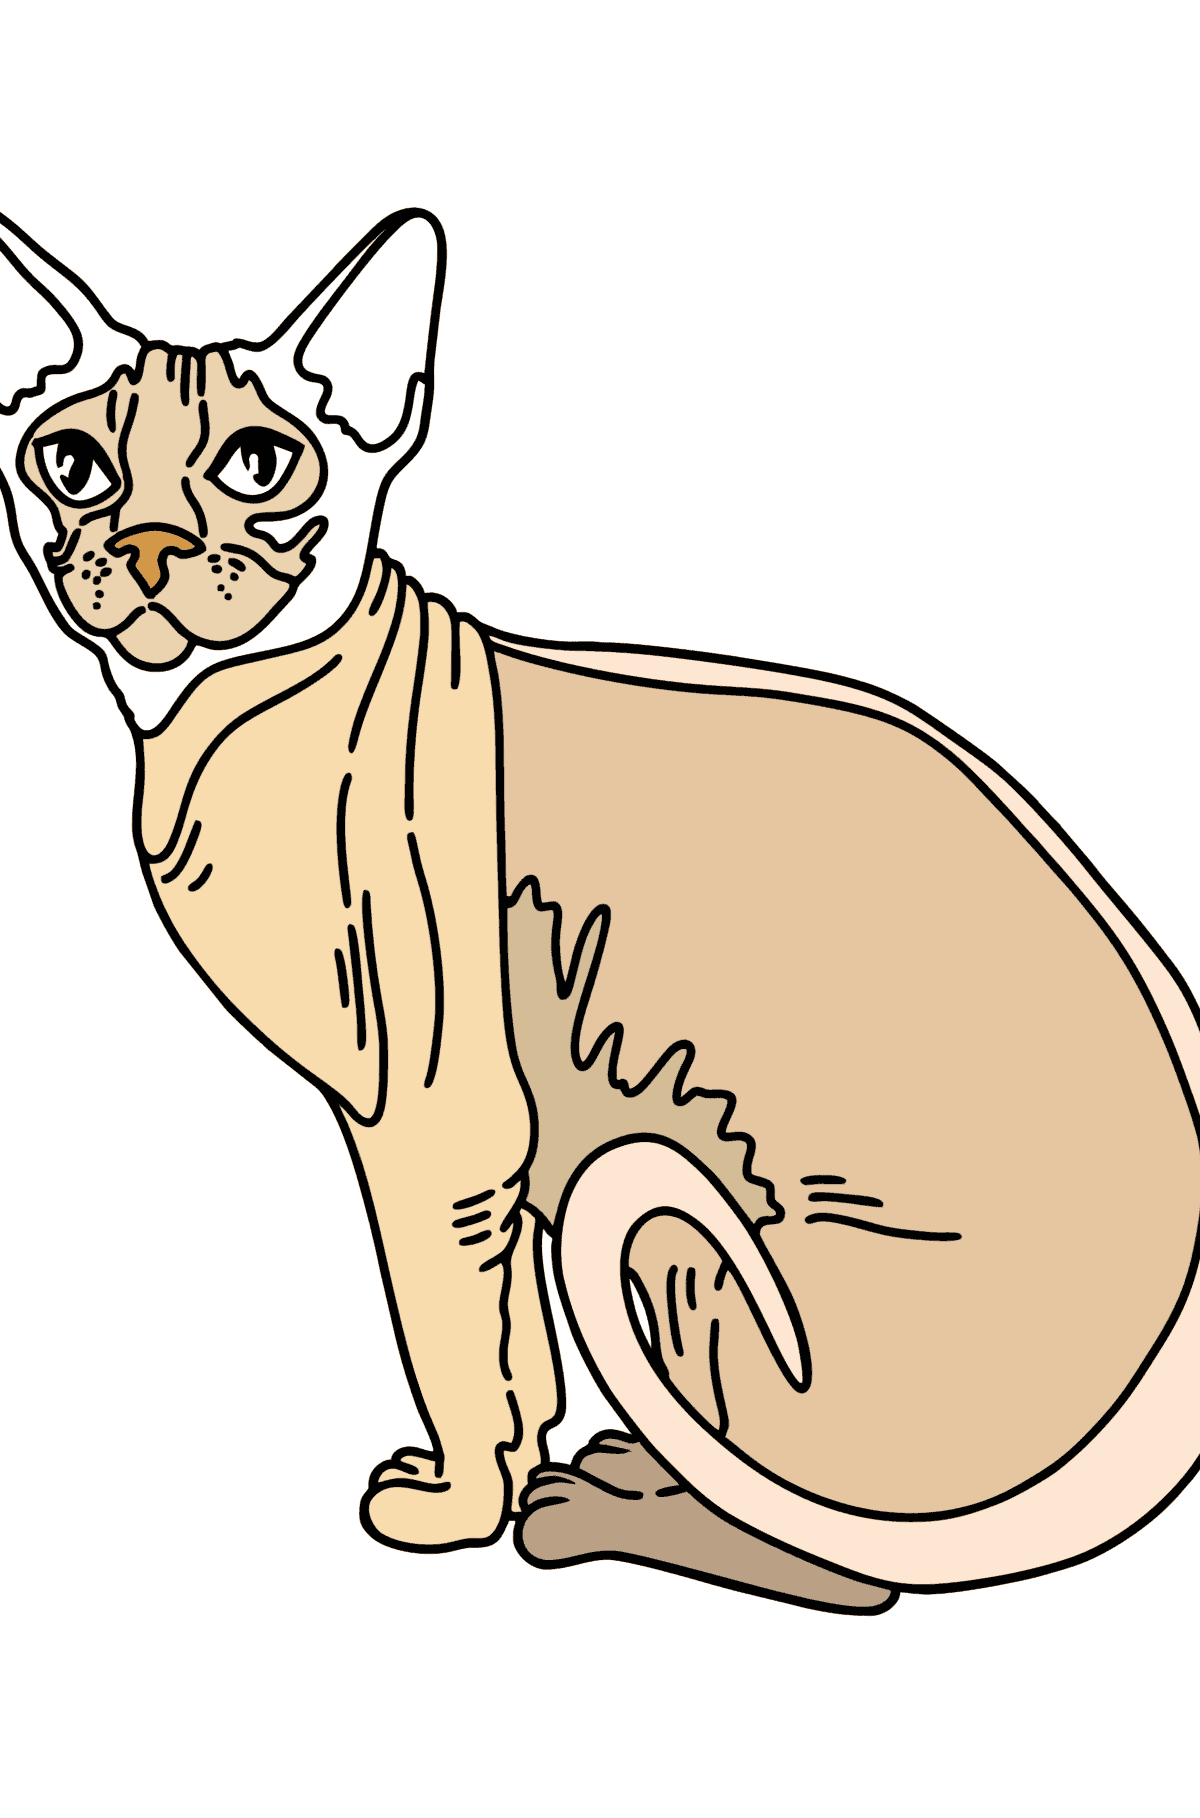 Boyama sayfası Sfenks kedi - Boyamalar çocuklar için